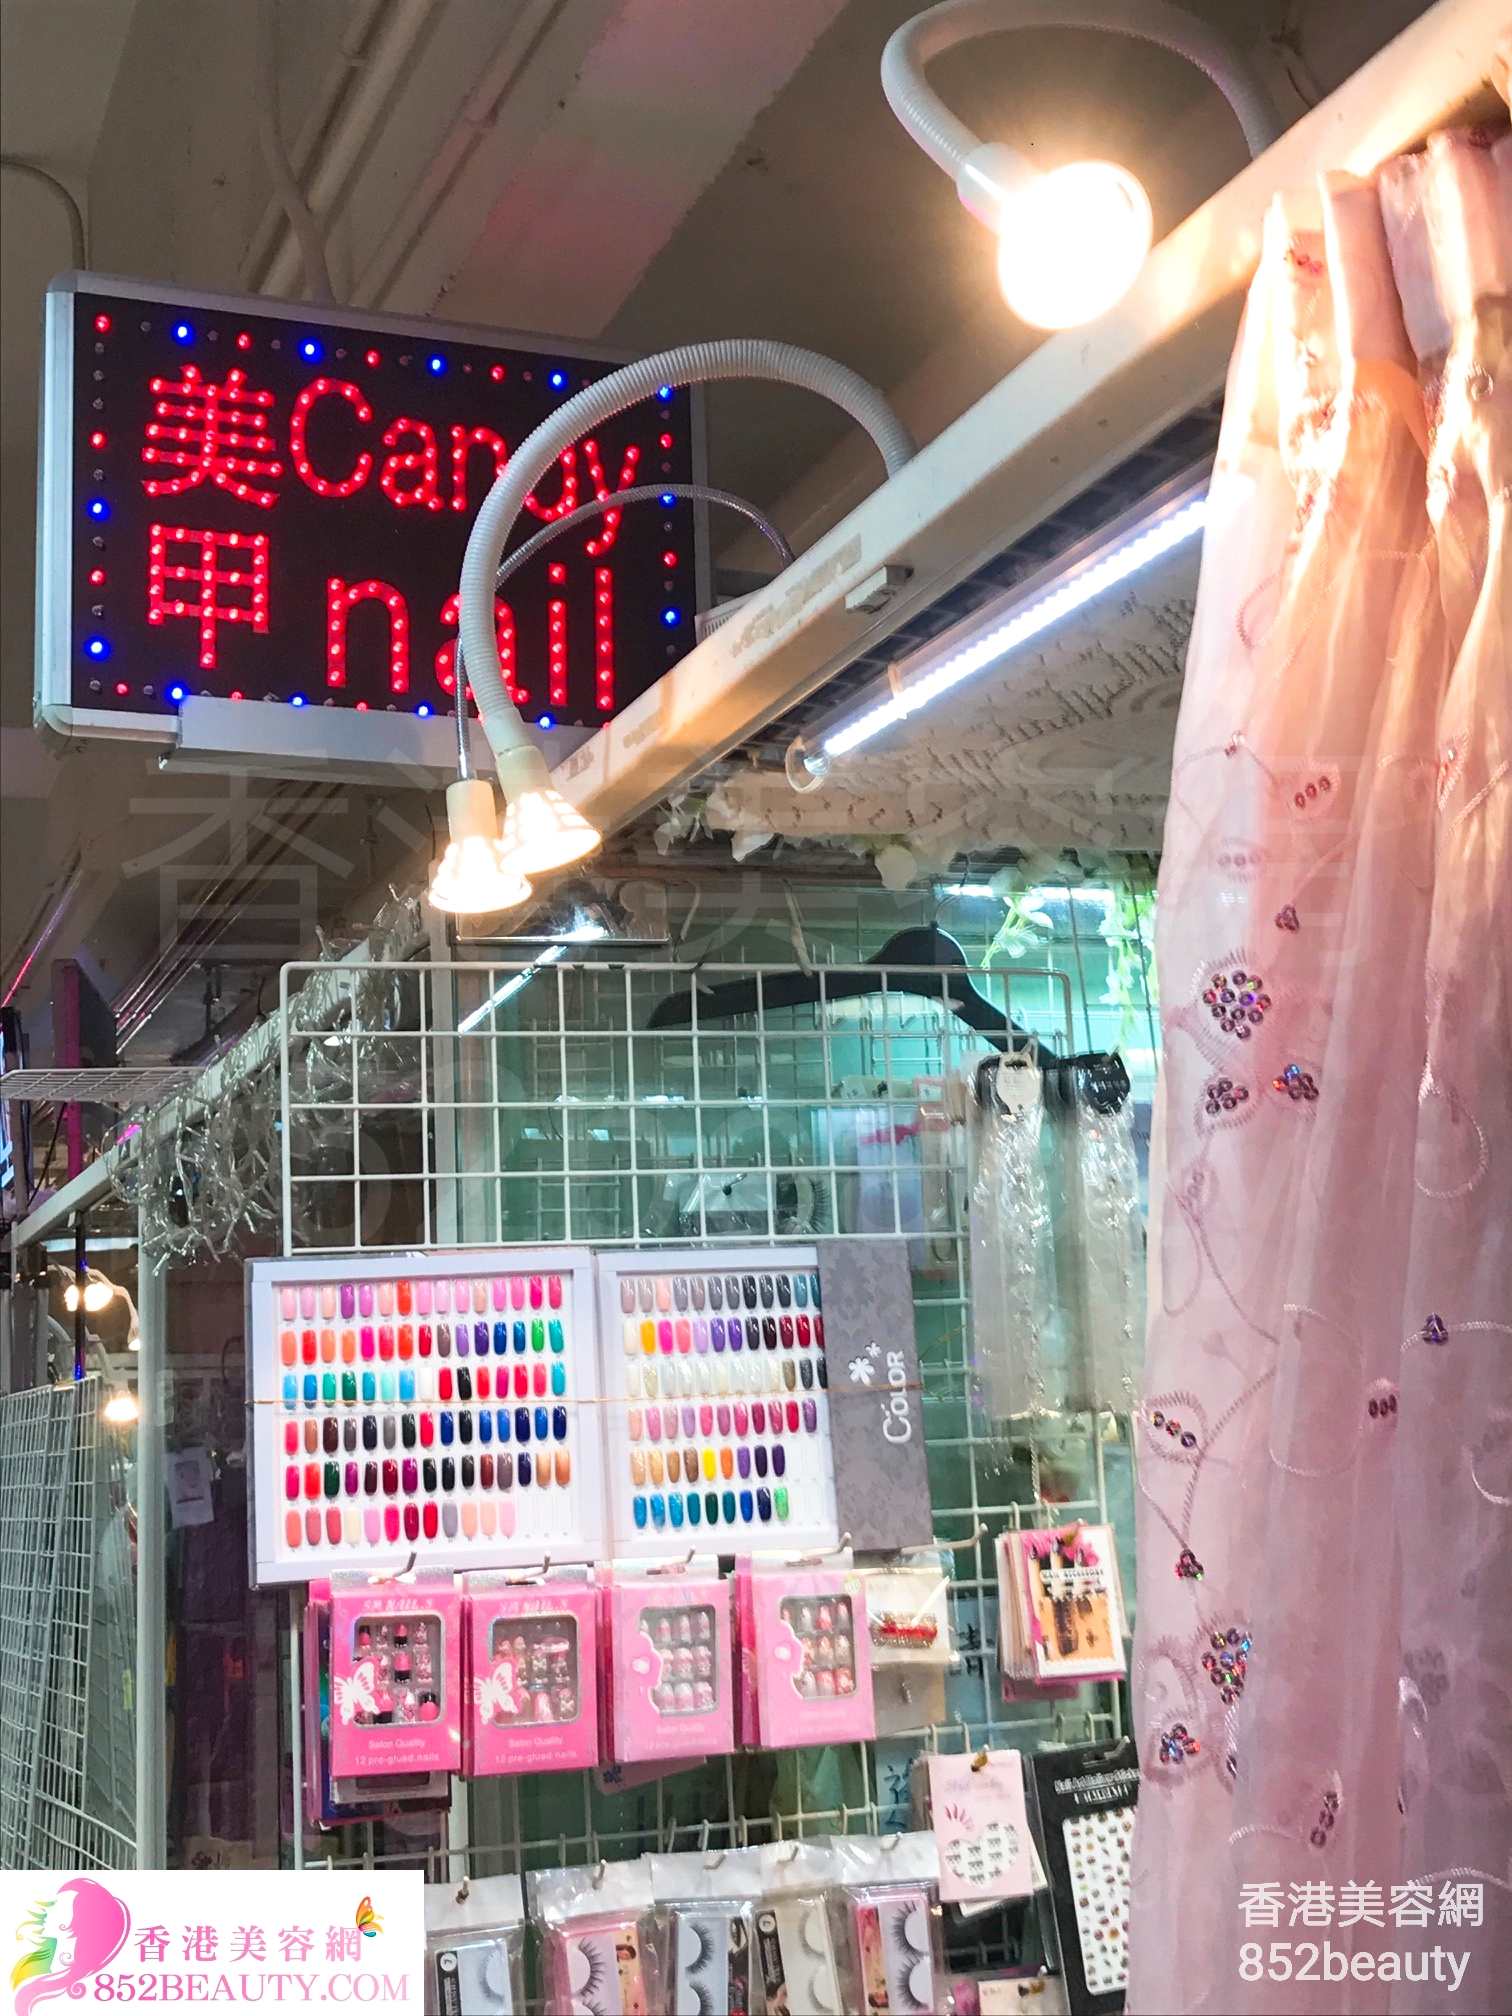 香港美容網 Hong Kong Beauty Salon 美容院 / 美容師: Candy nail